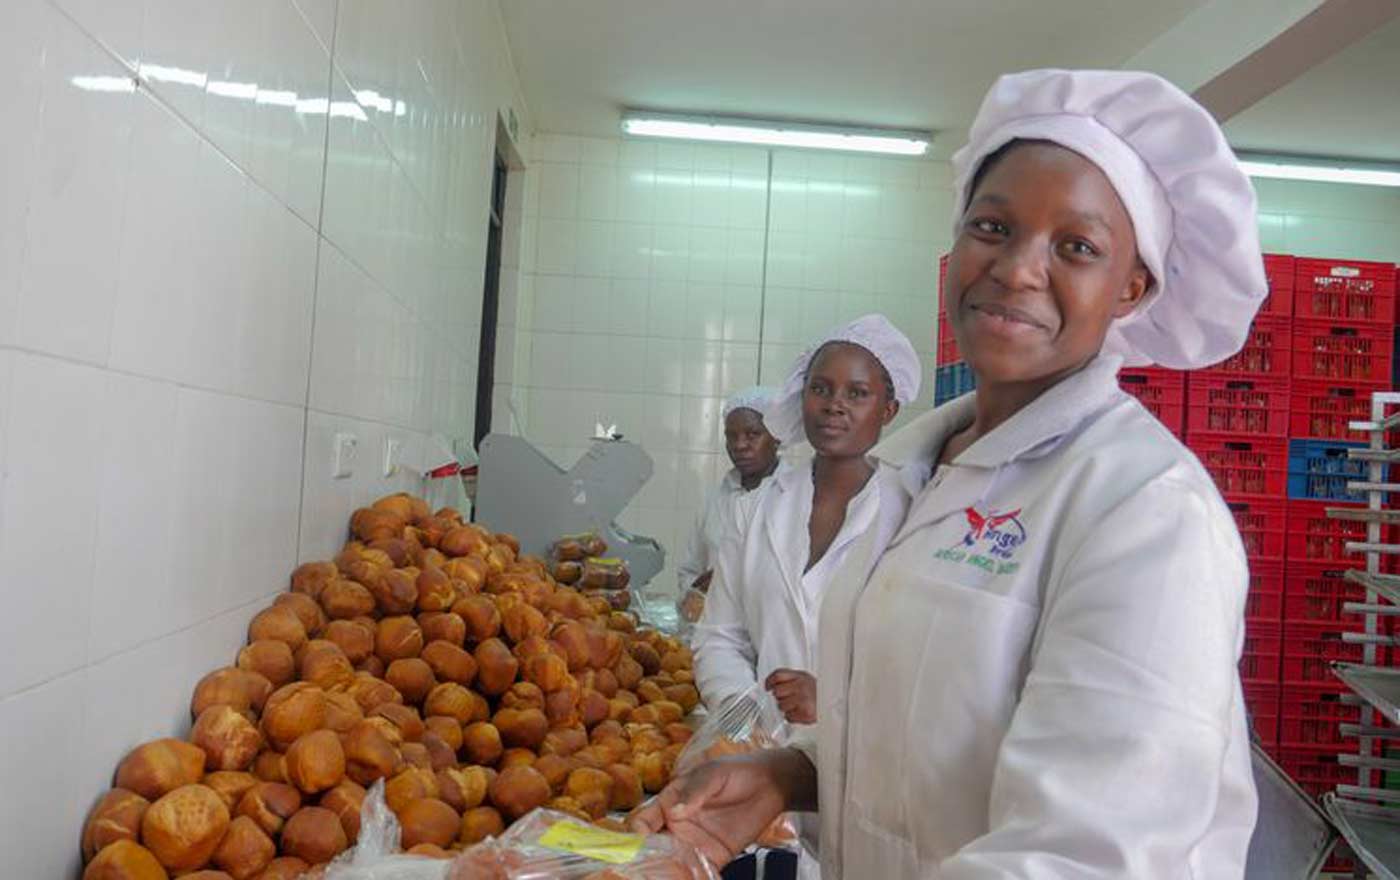 Brot für die Welt widmet die Spenden zum Giving Tuesday einem Projekt in Kenia, bei dem junge Menschen in einer Bäckerei ausgebildet werden. Foto: Brot für die Welt